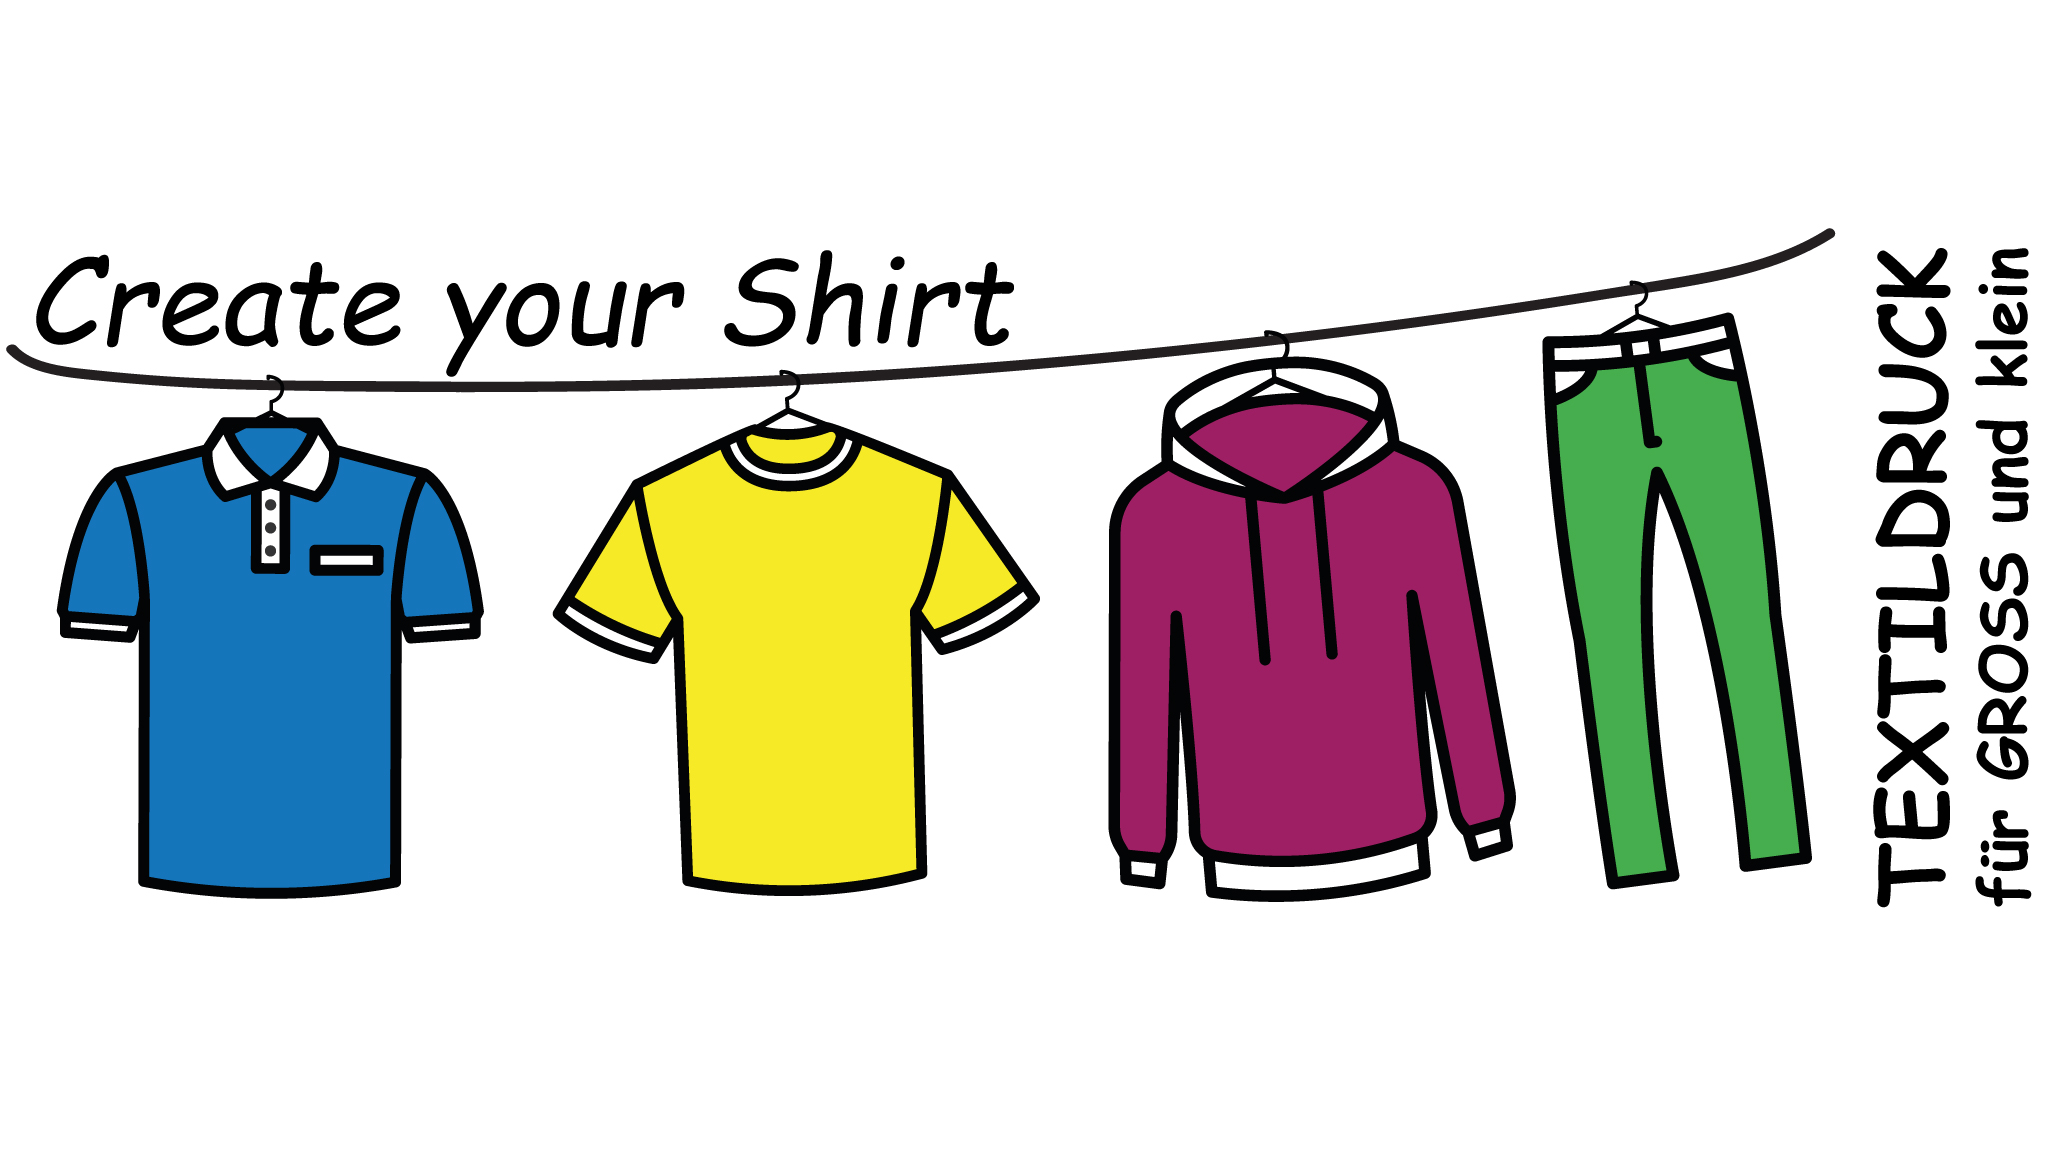 Create your Shirt - Shirtdesigner